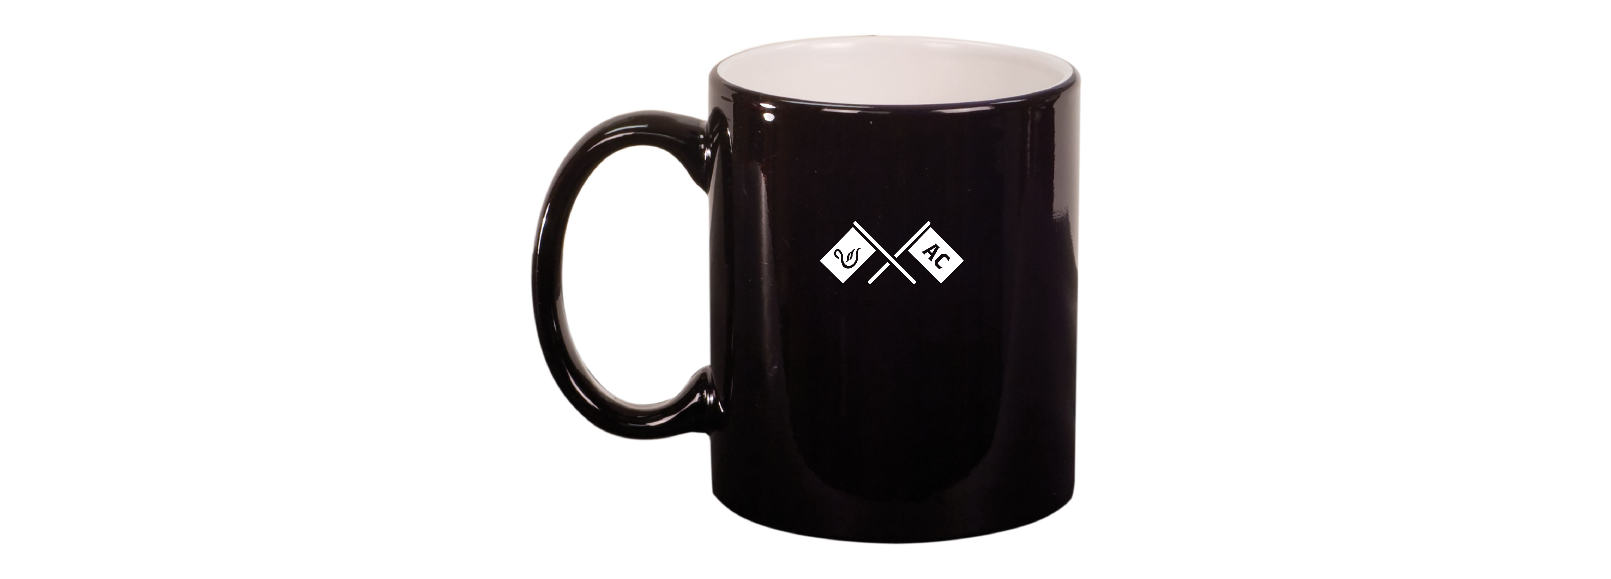 Acoaxet Club 17oz Engraved Coffee Mug - 4 pack